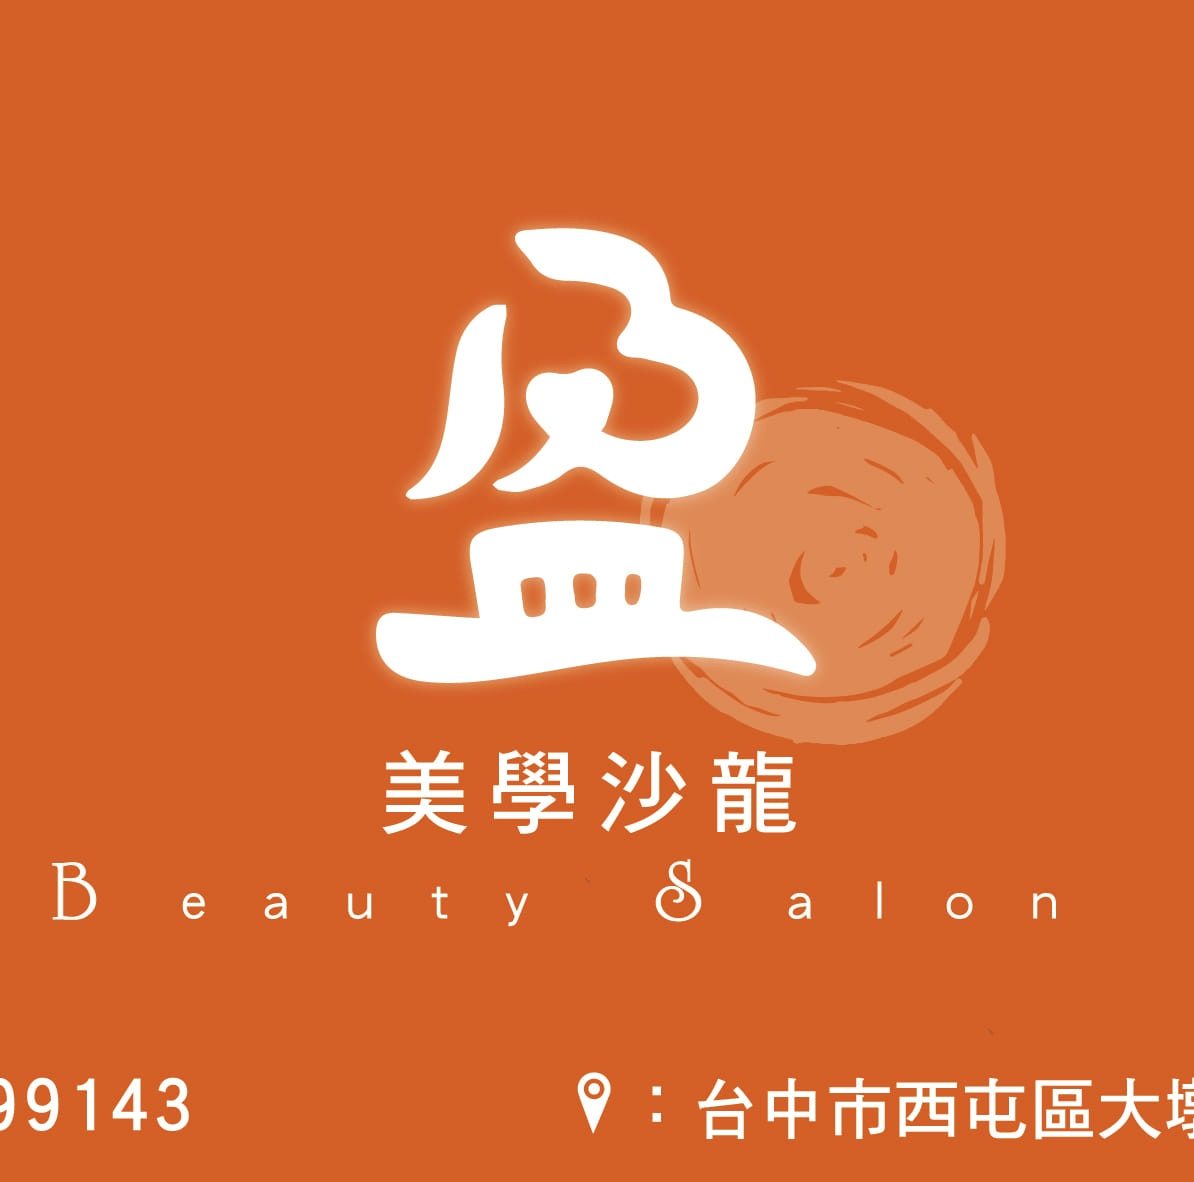 盈楹美學沙龍Logo